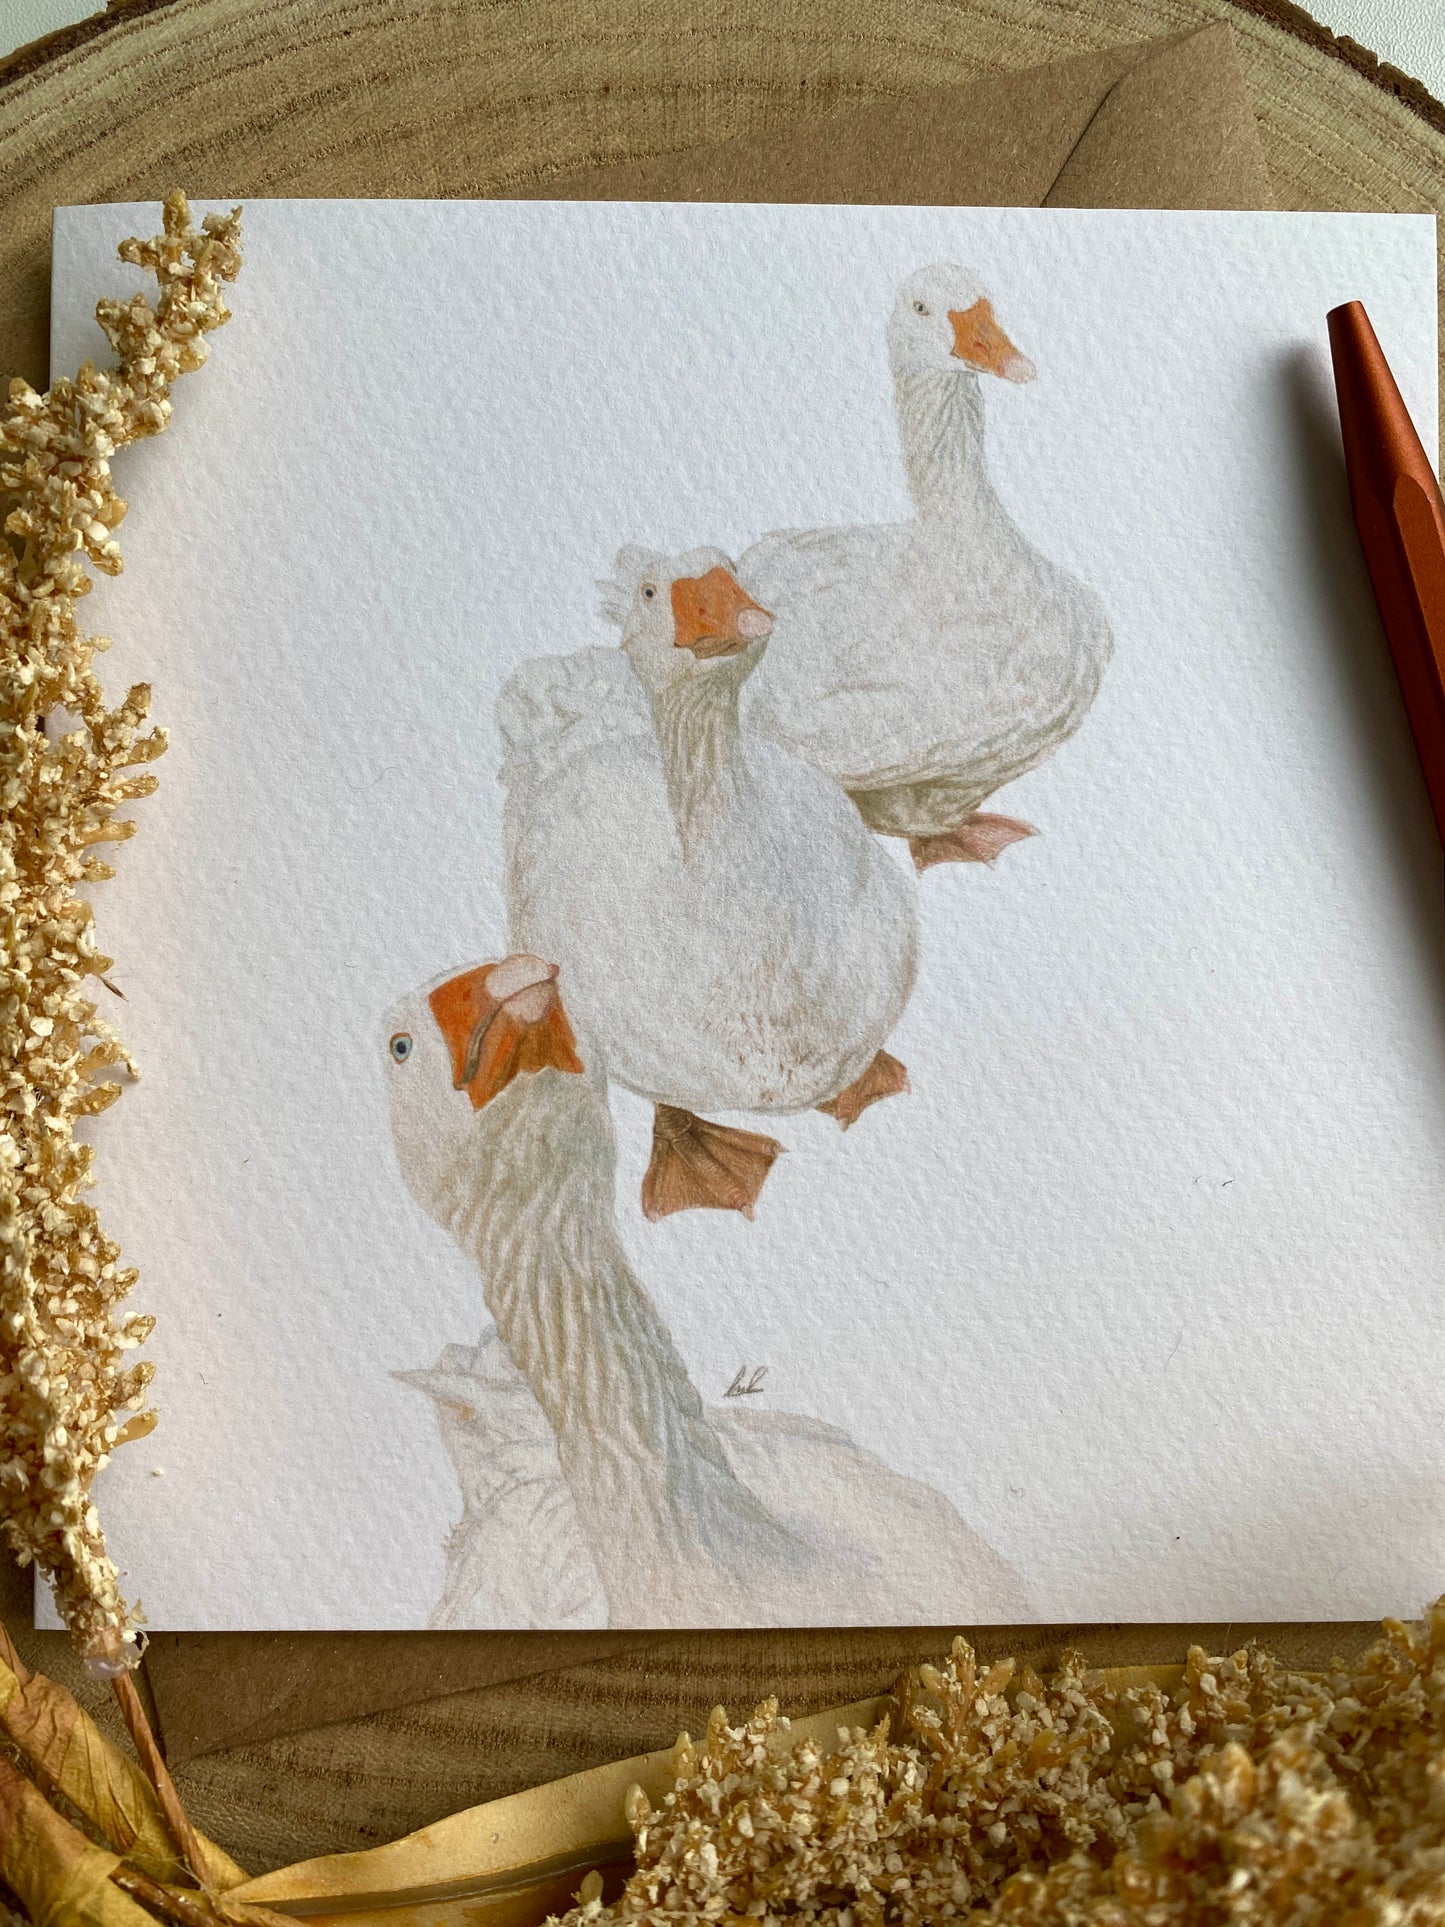 Geese greetings card.